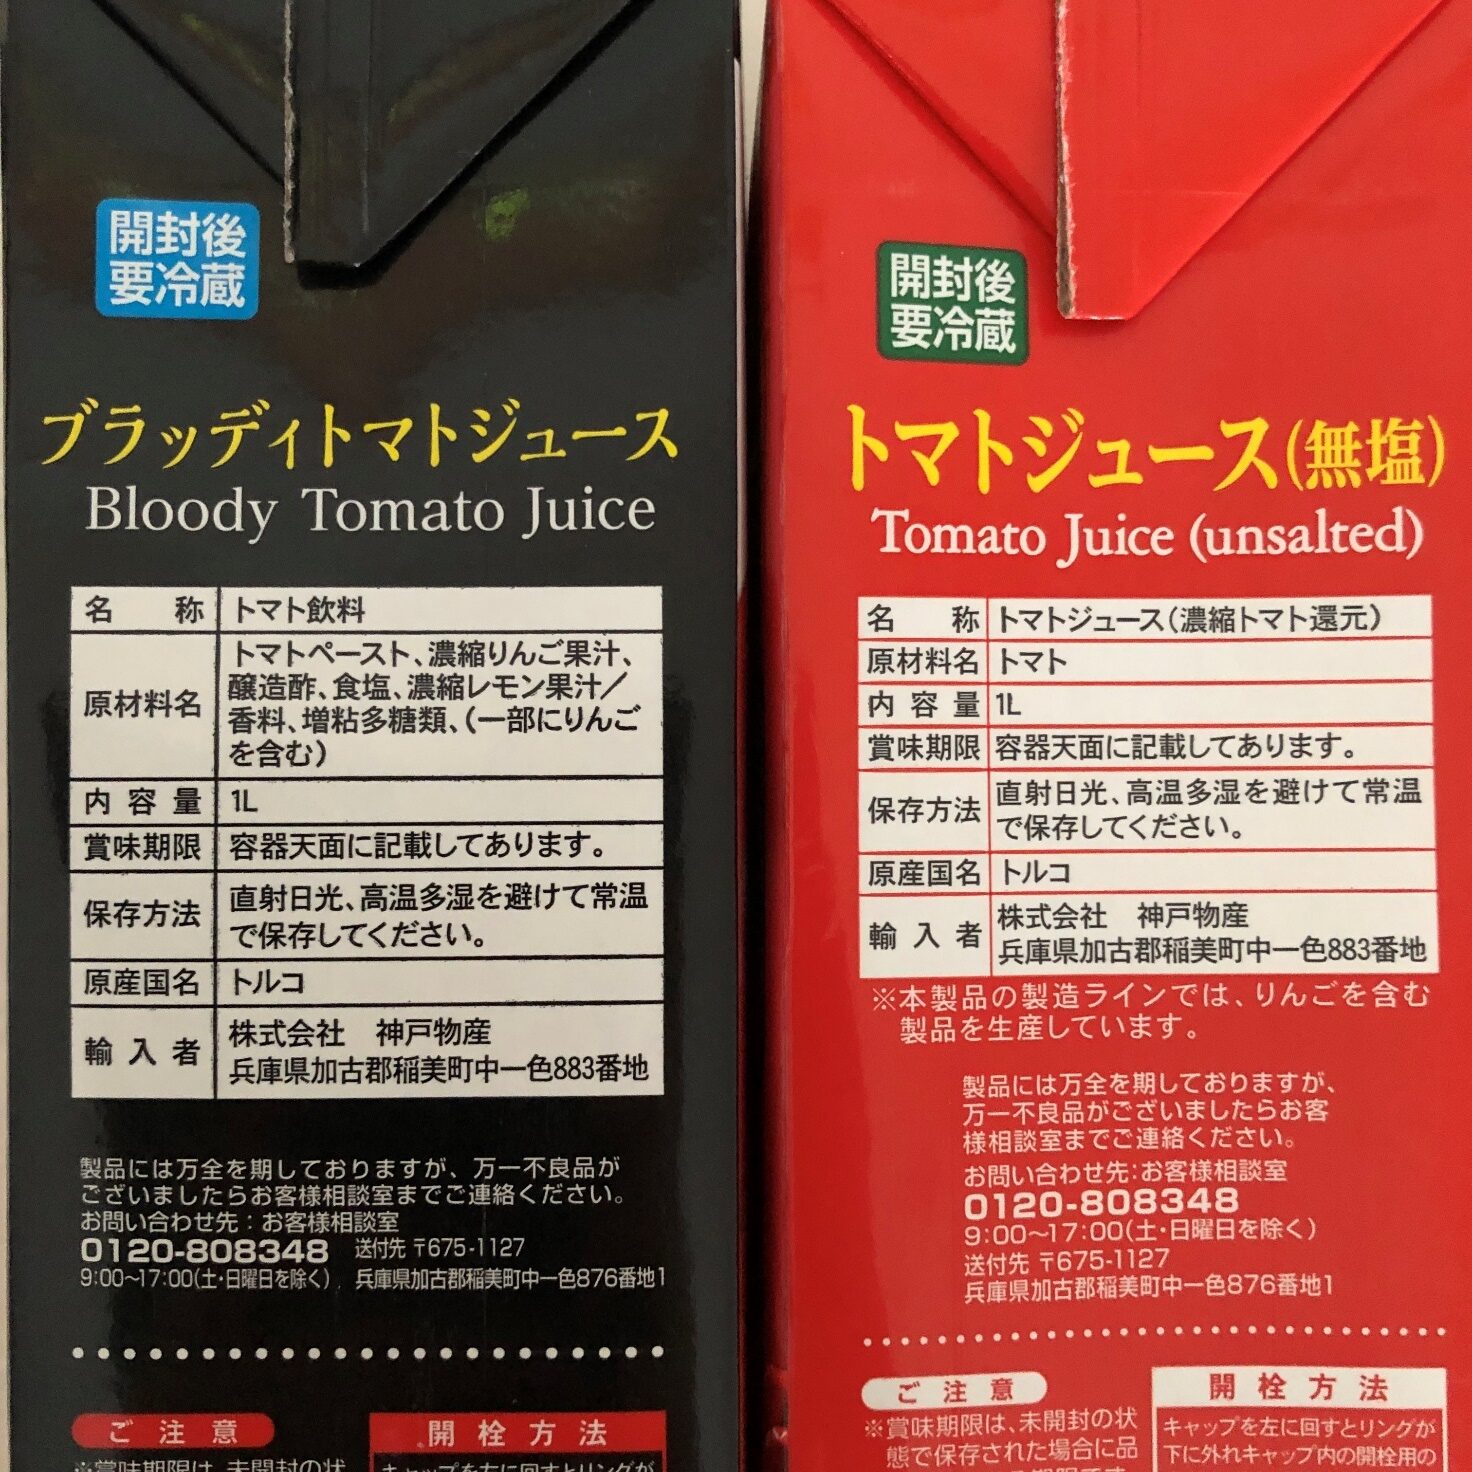 業務スーパーのブラッディトマトジュースと無塩トマトジュースの原材料名・原産国名の表記